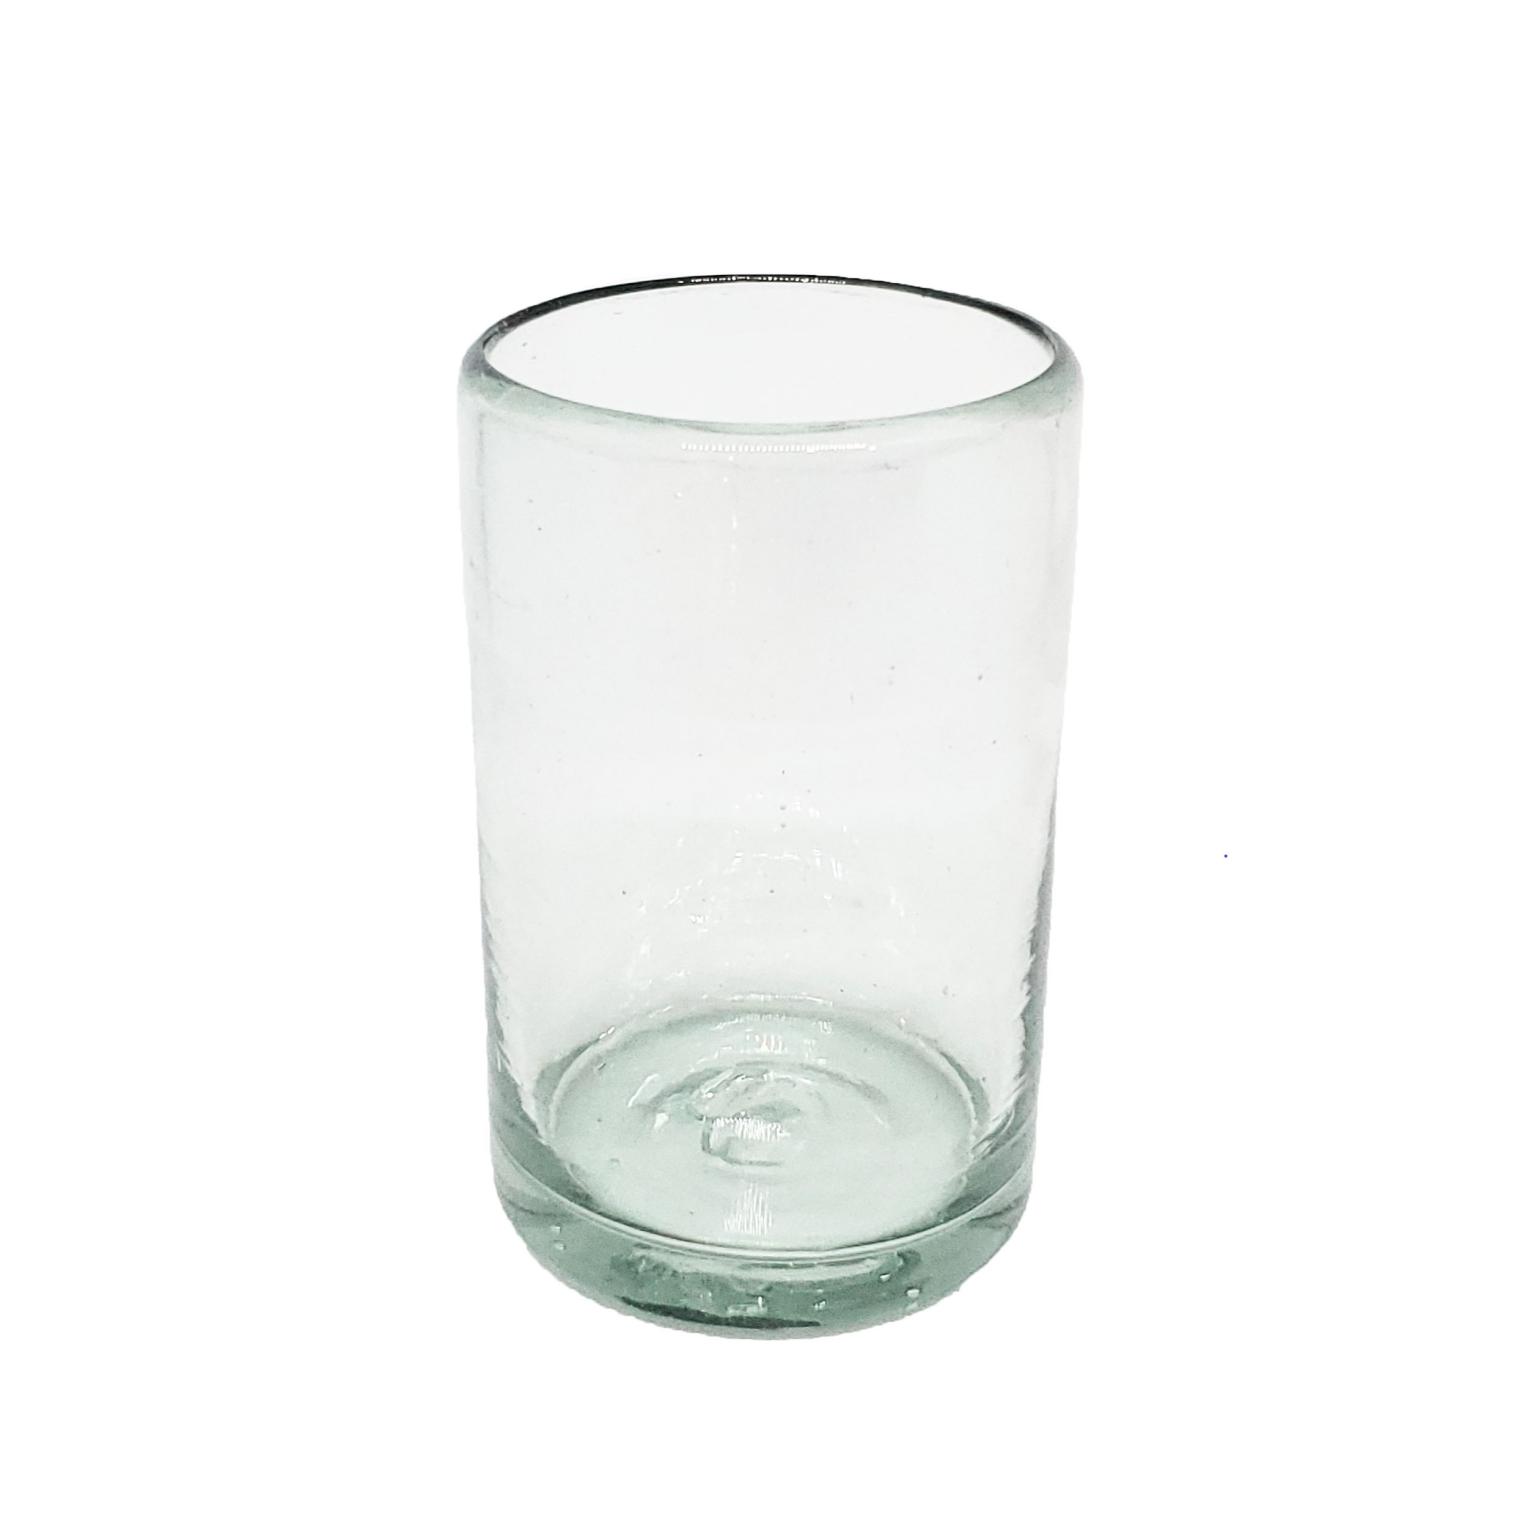 VIDRIO SOPLADO al Mayoreo / vasos Jugo 9oz Transparentes / stos artesanales vasos le darn un toque clsico a su bebida favorita.